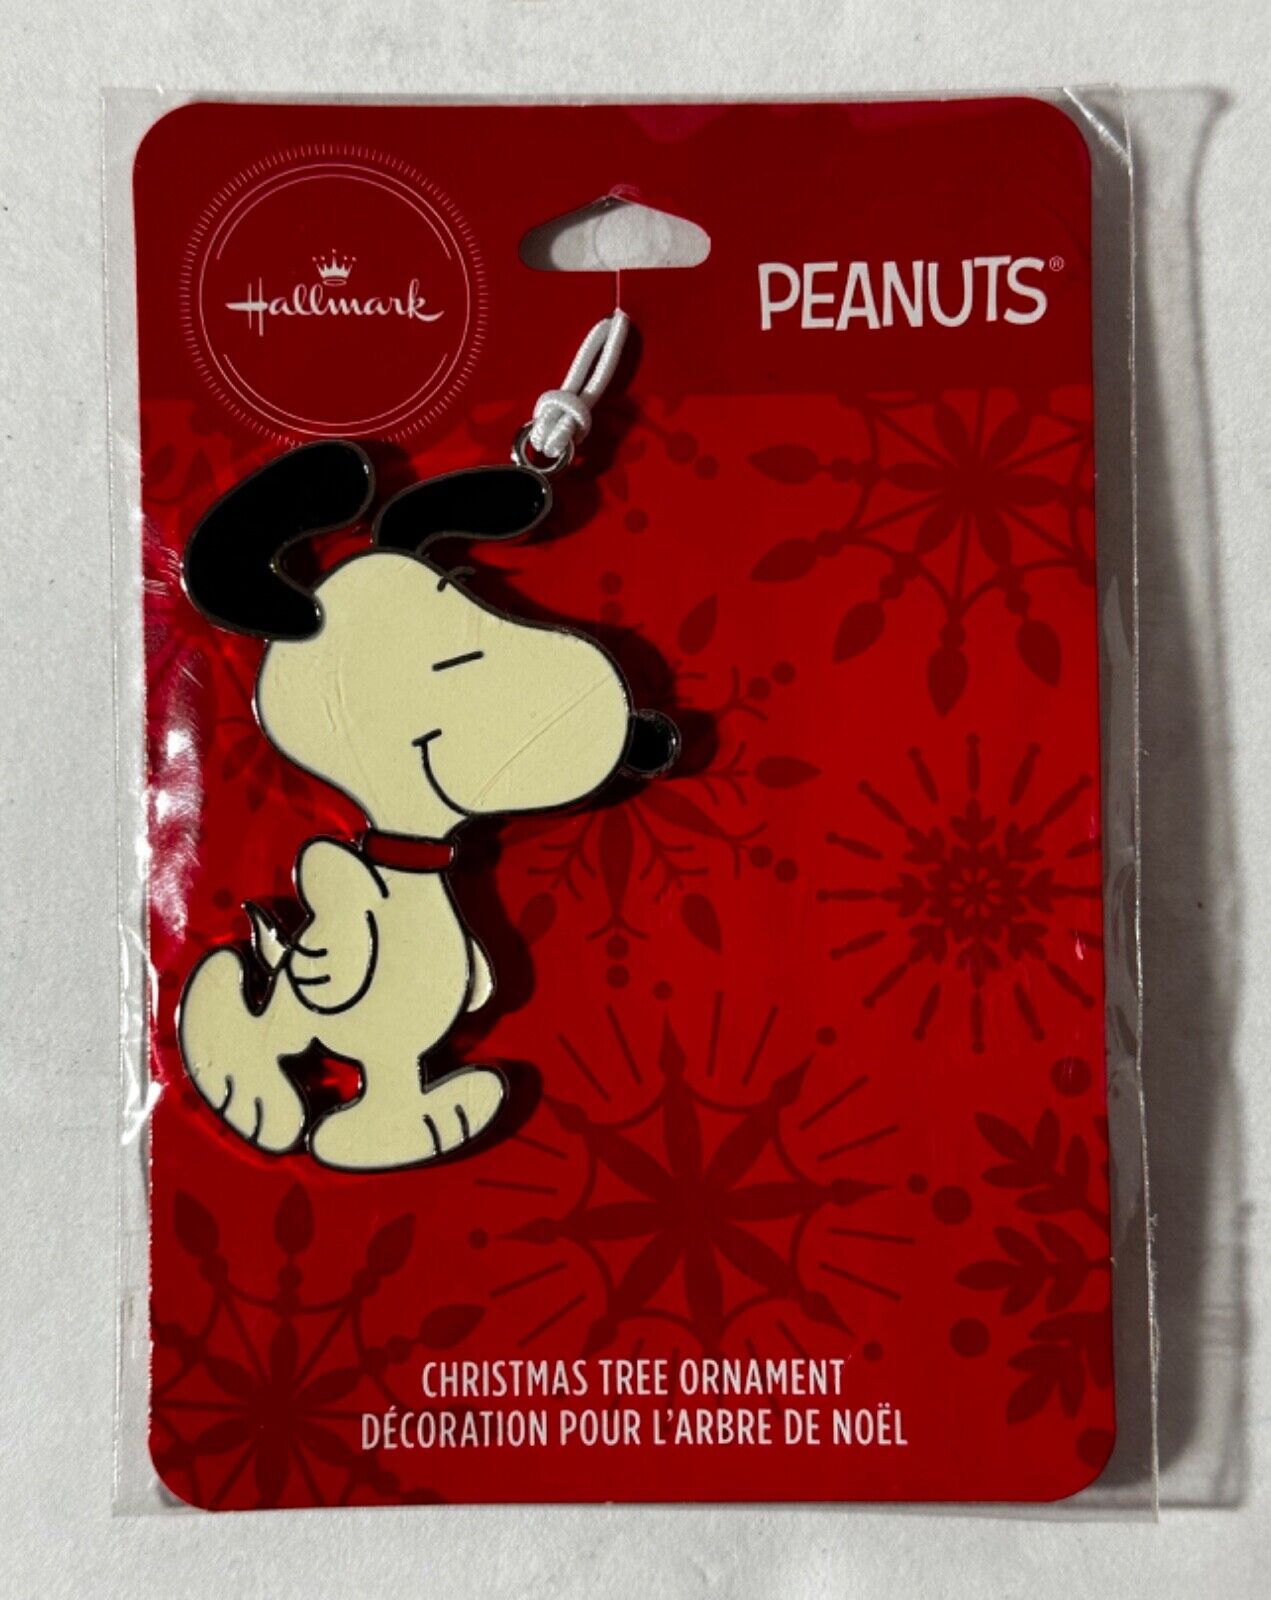 Hallmark Peanuts Snoopy Christmas Tree Ornament